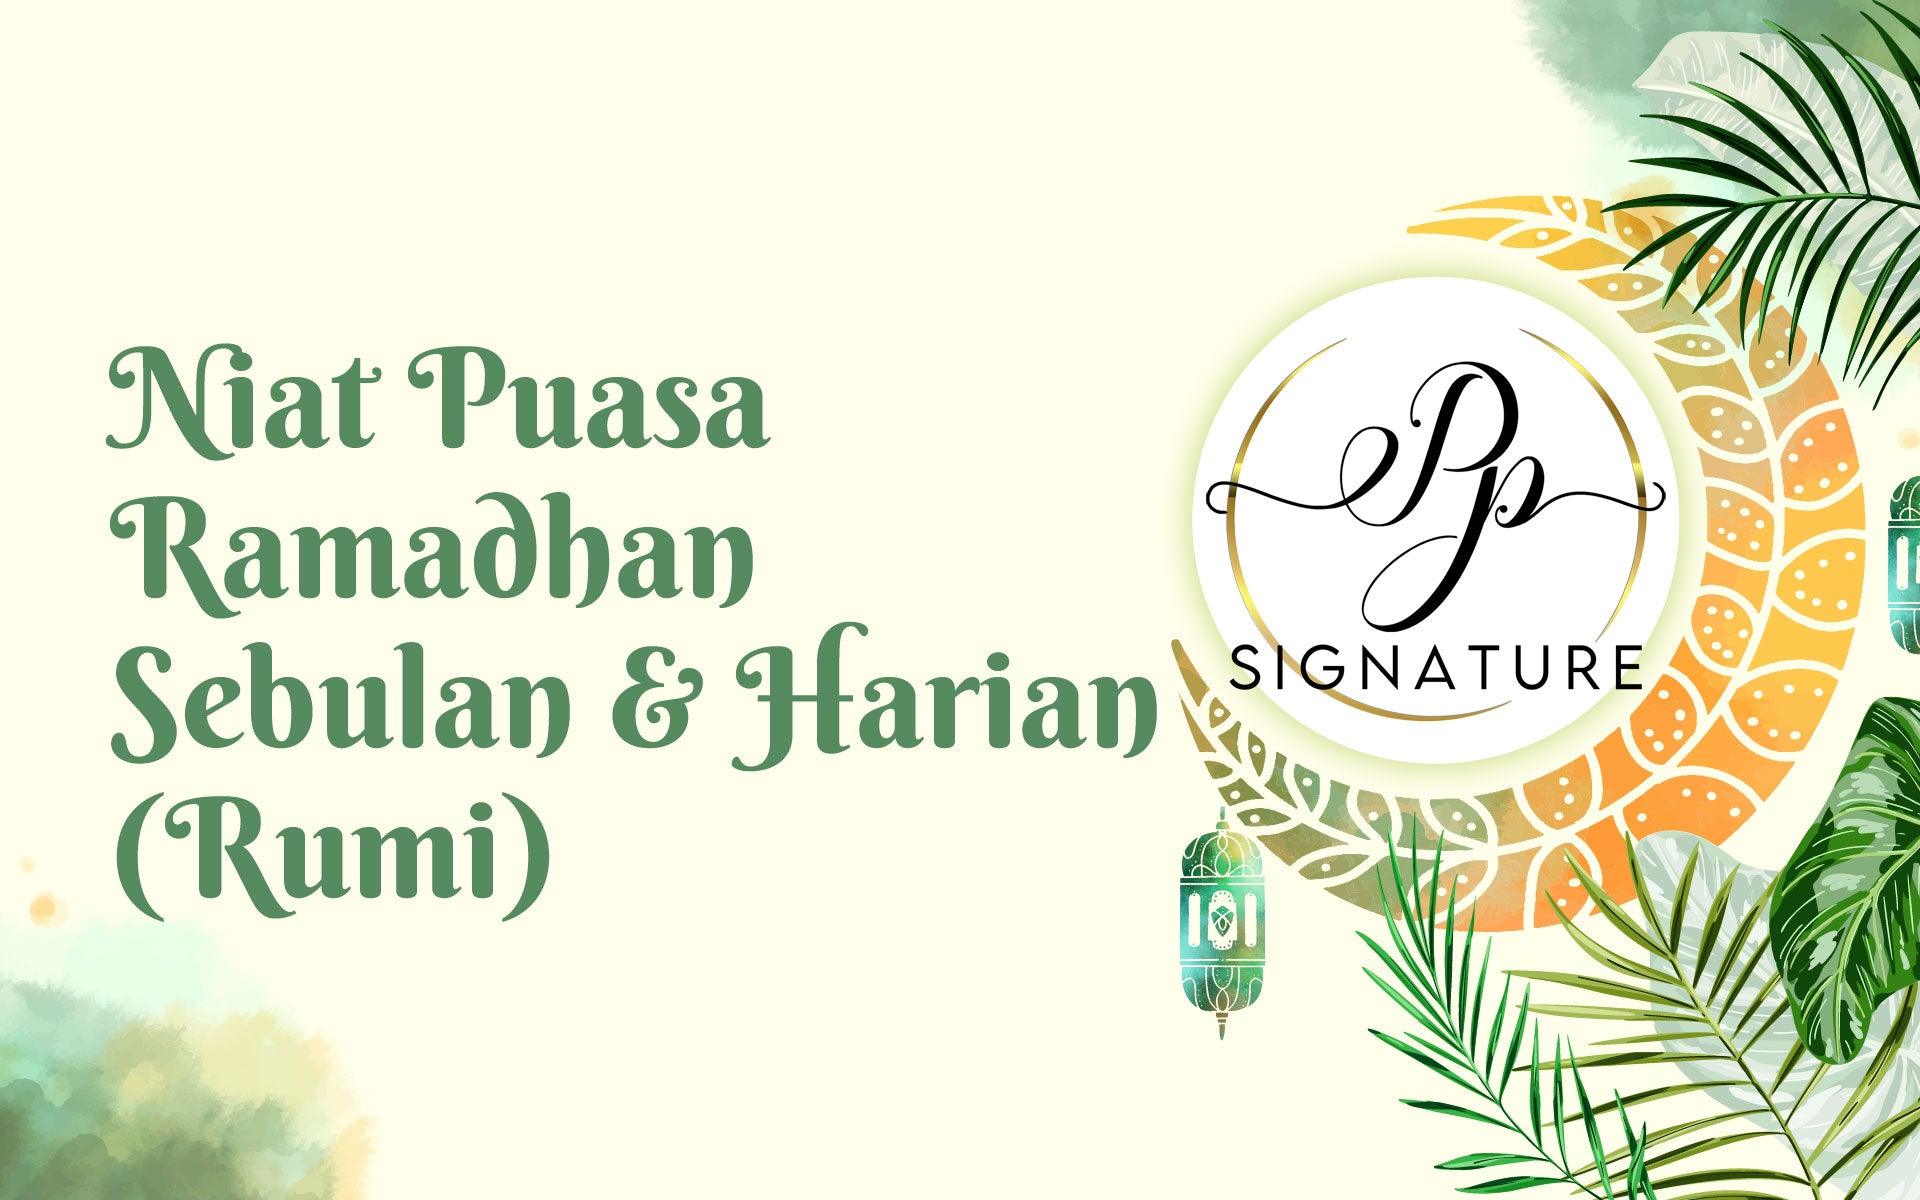 Niat Puasa Ramadhan Sebulan & Niat Puasa Setiap Malam - PP Signature